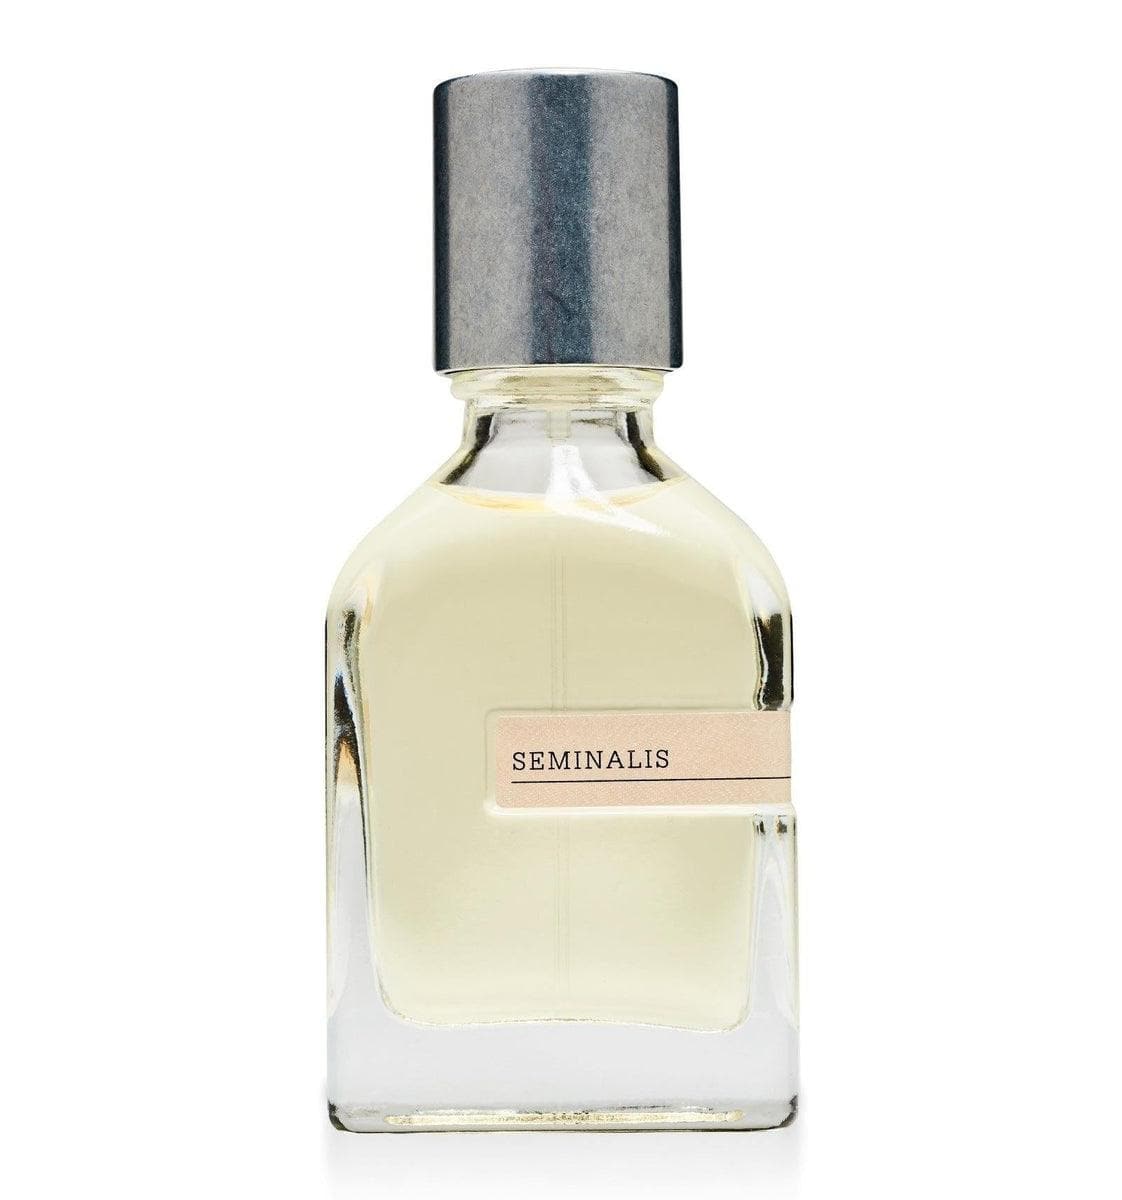 ORTO PARISI - Seminalis - Parfum 50ml - Vittorio Citro Boutique